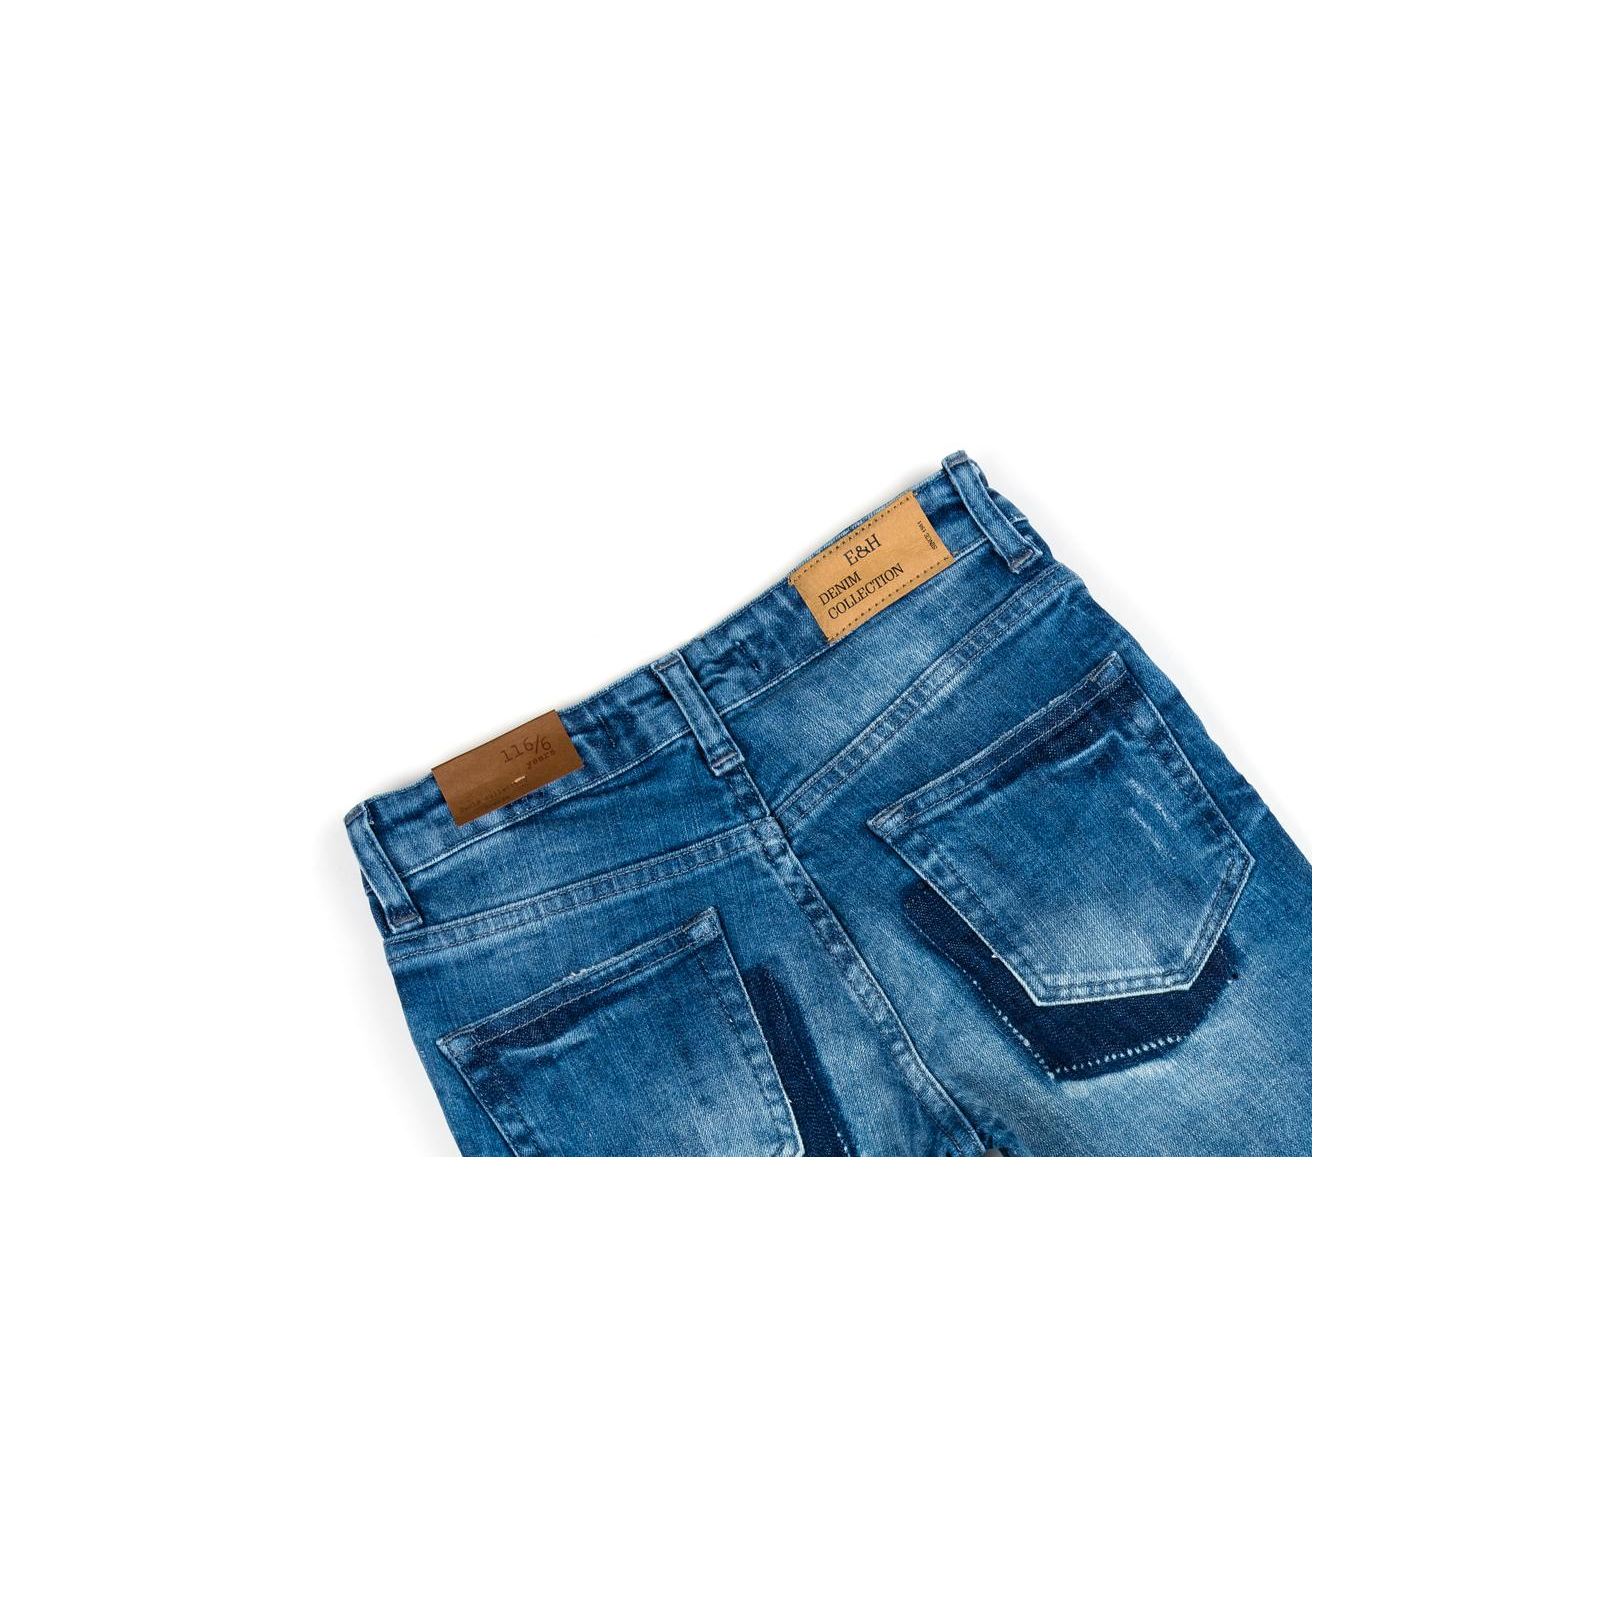 Штаны детские Breeze джинсовые с потертостями (OZ-18606-134B-blue) изображение 4